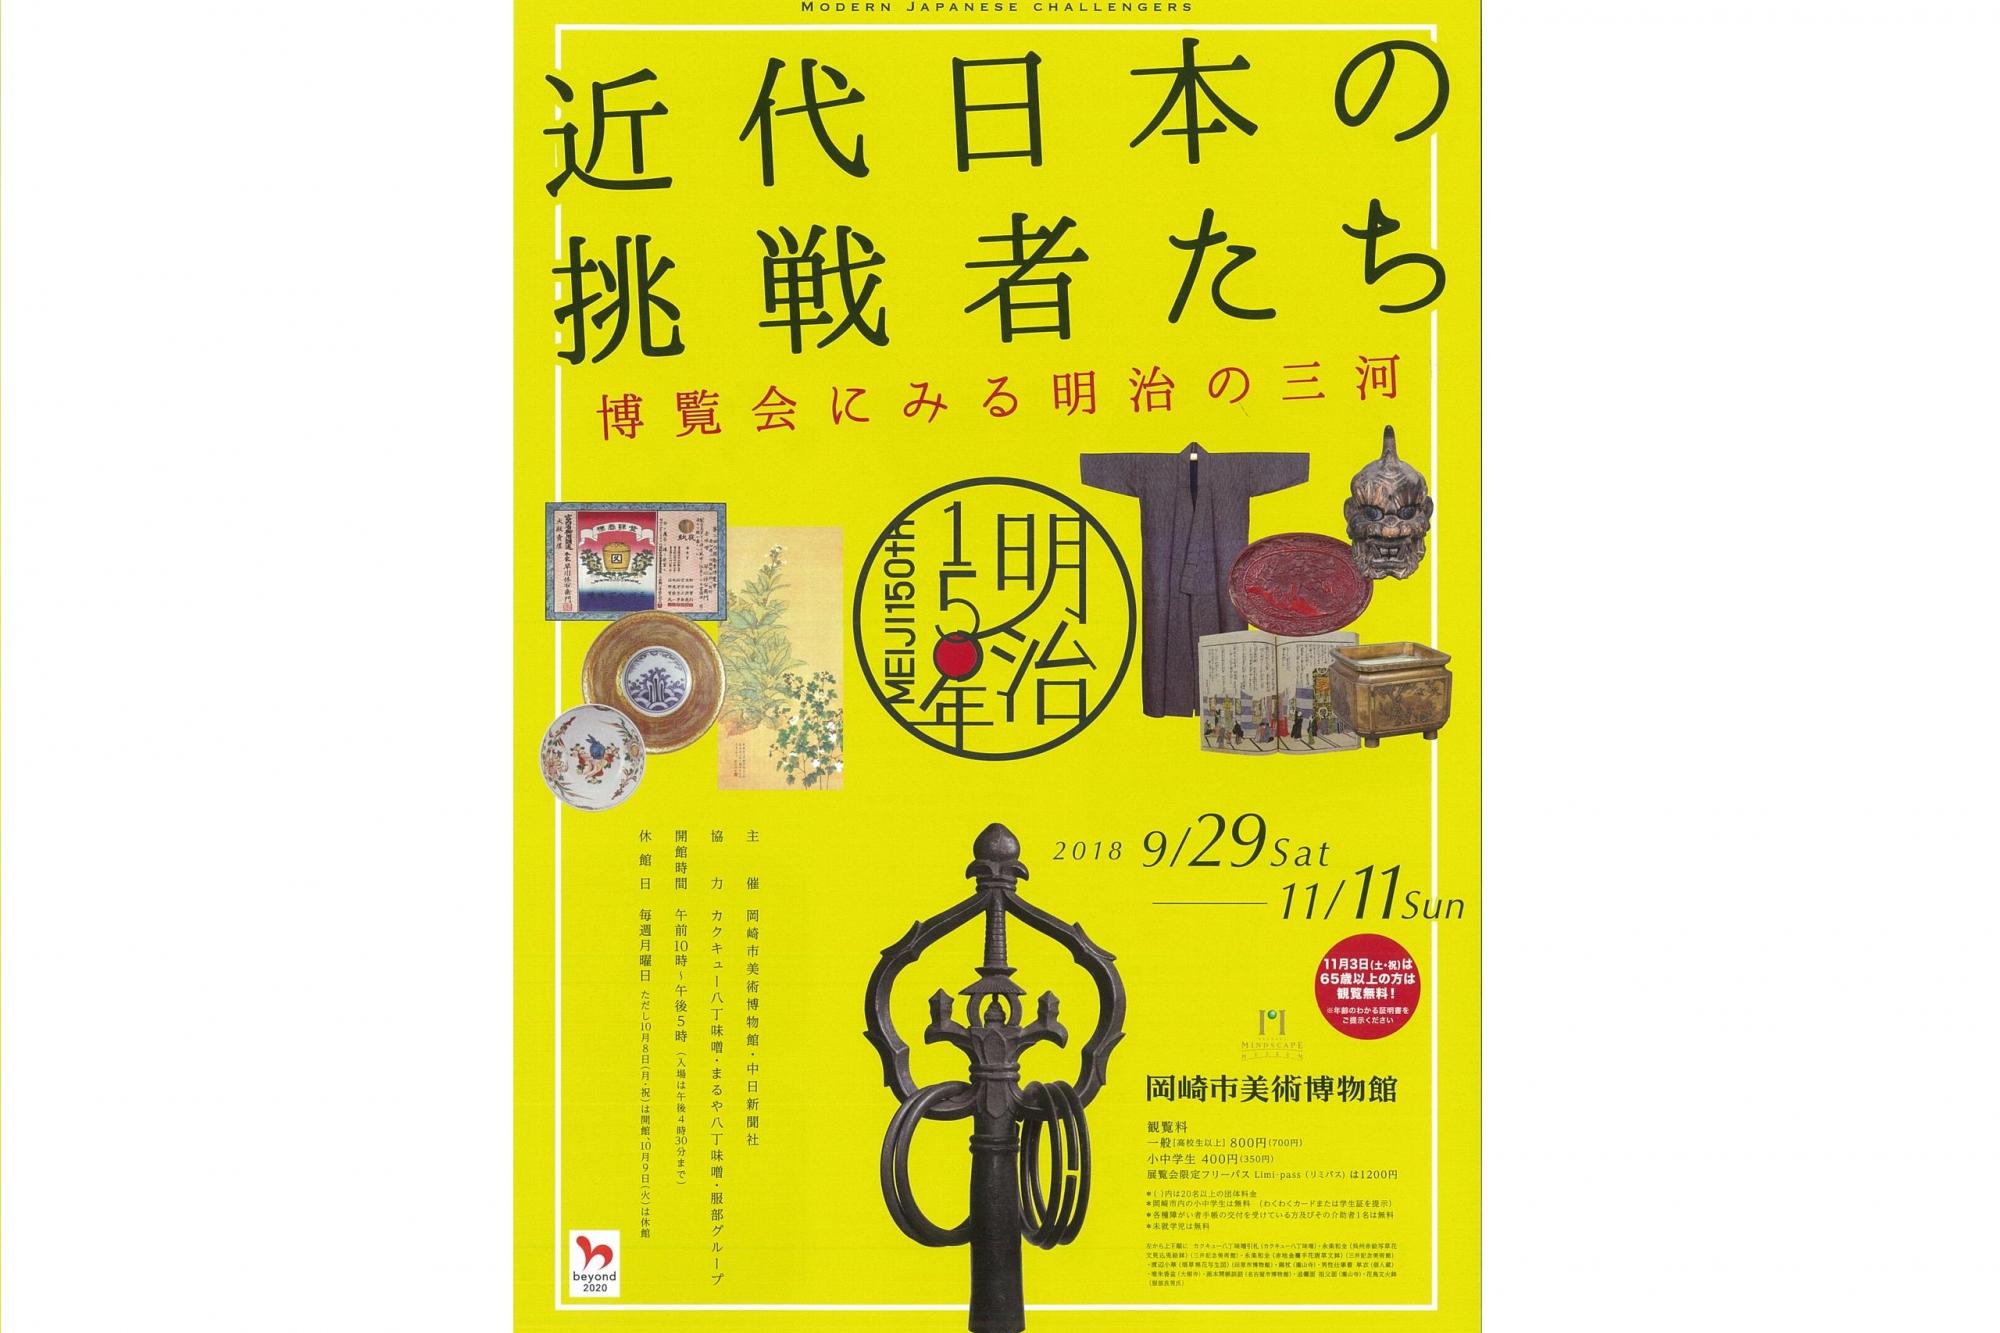 「近代日本の挑戦者たち－博覧会にみる明治の三河」を開催します！